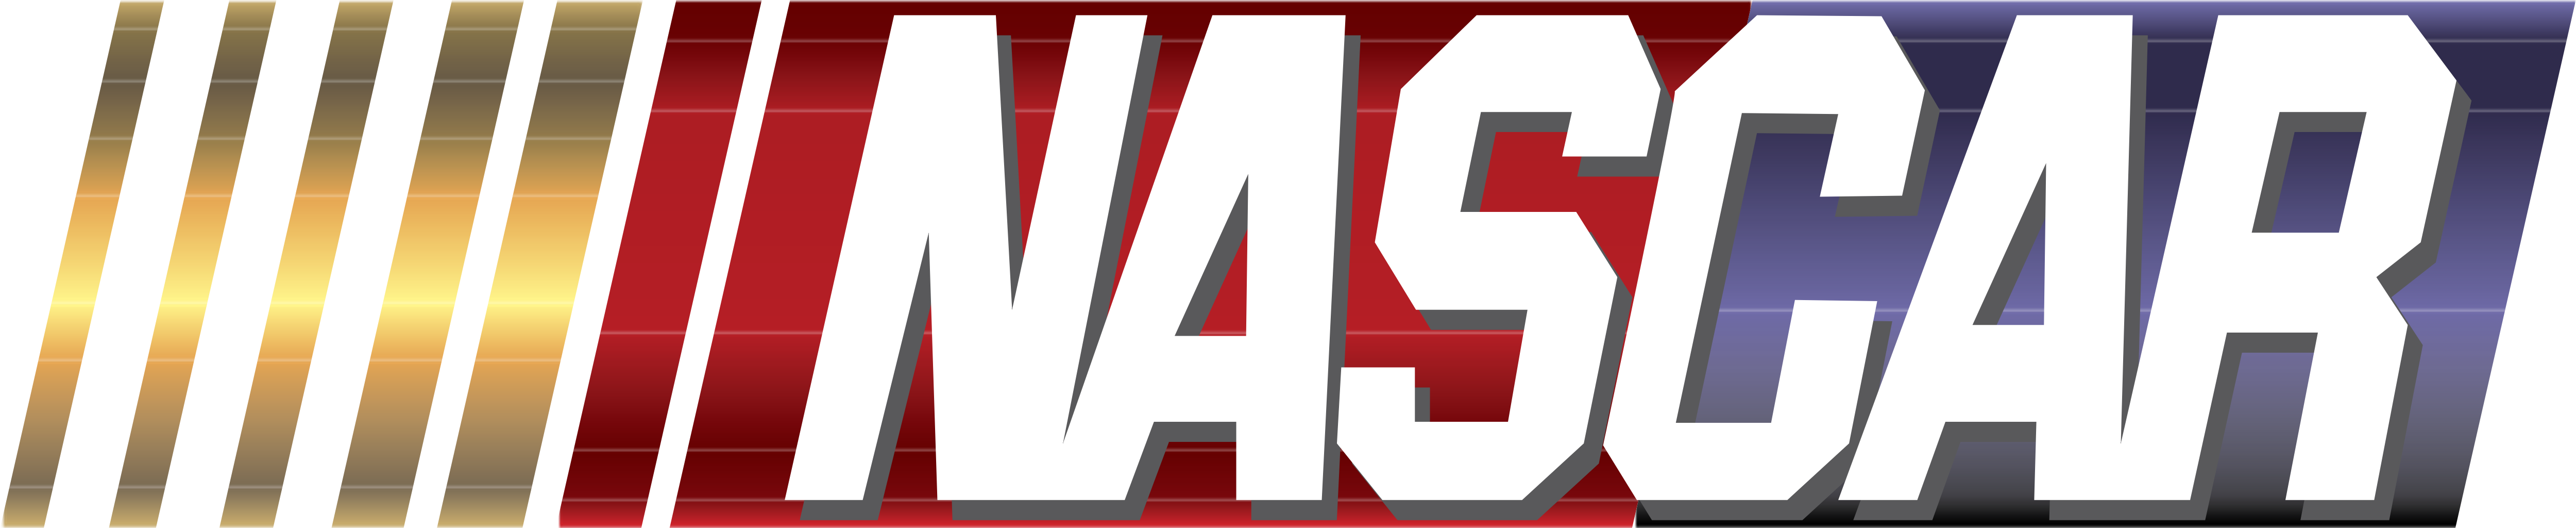 NASCAR Logos Download